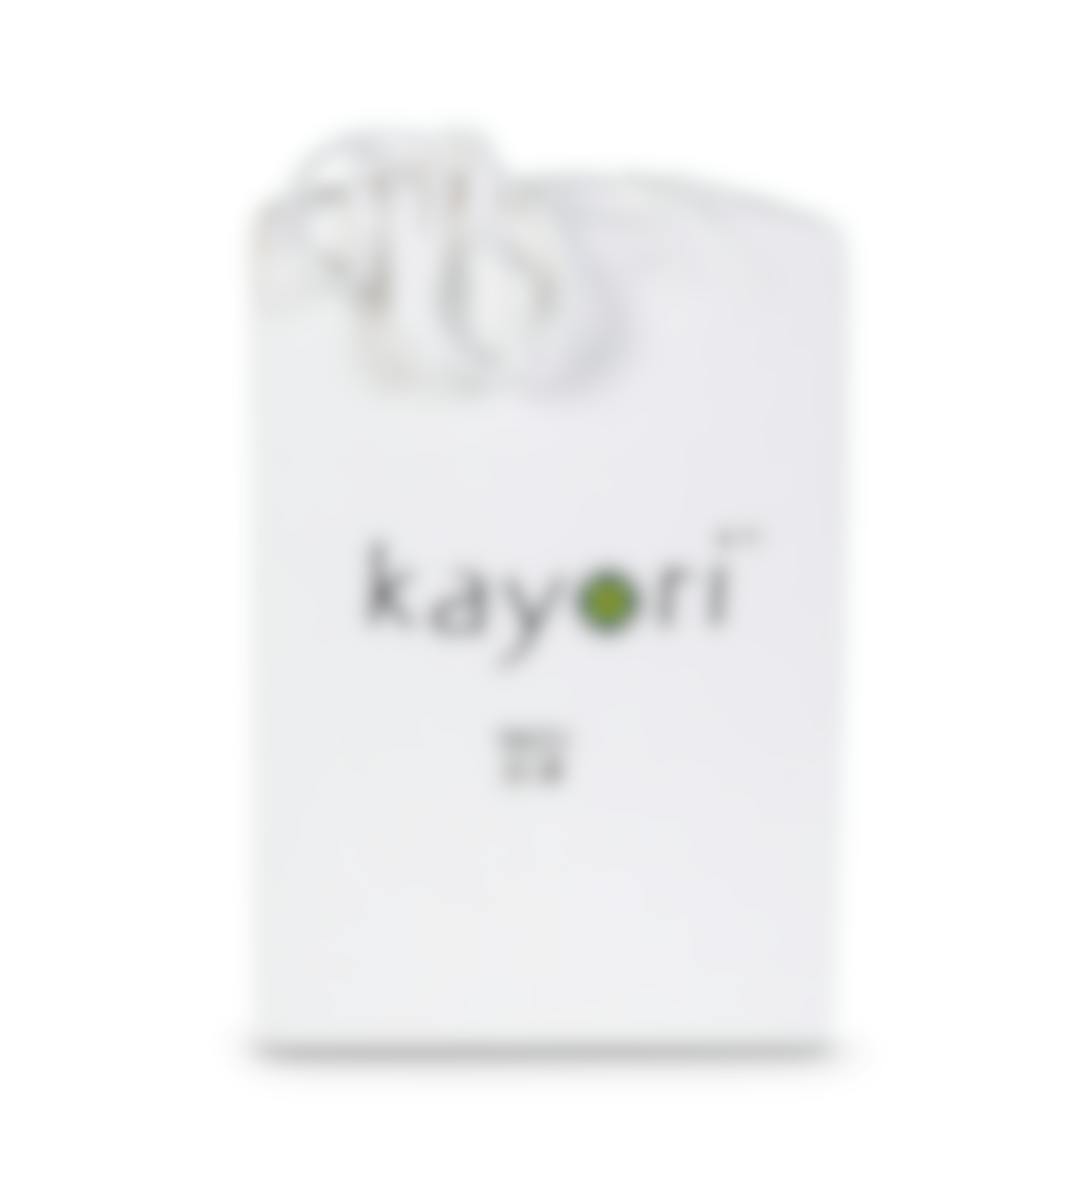 Kayori protège-matelas pour sommiers articulés Jersey de coton (coin 40 cm)